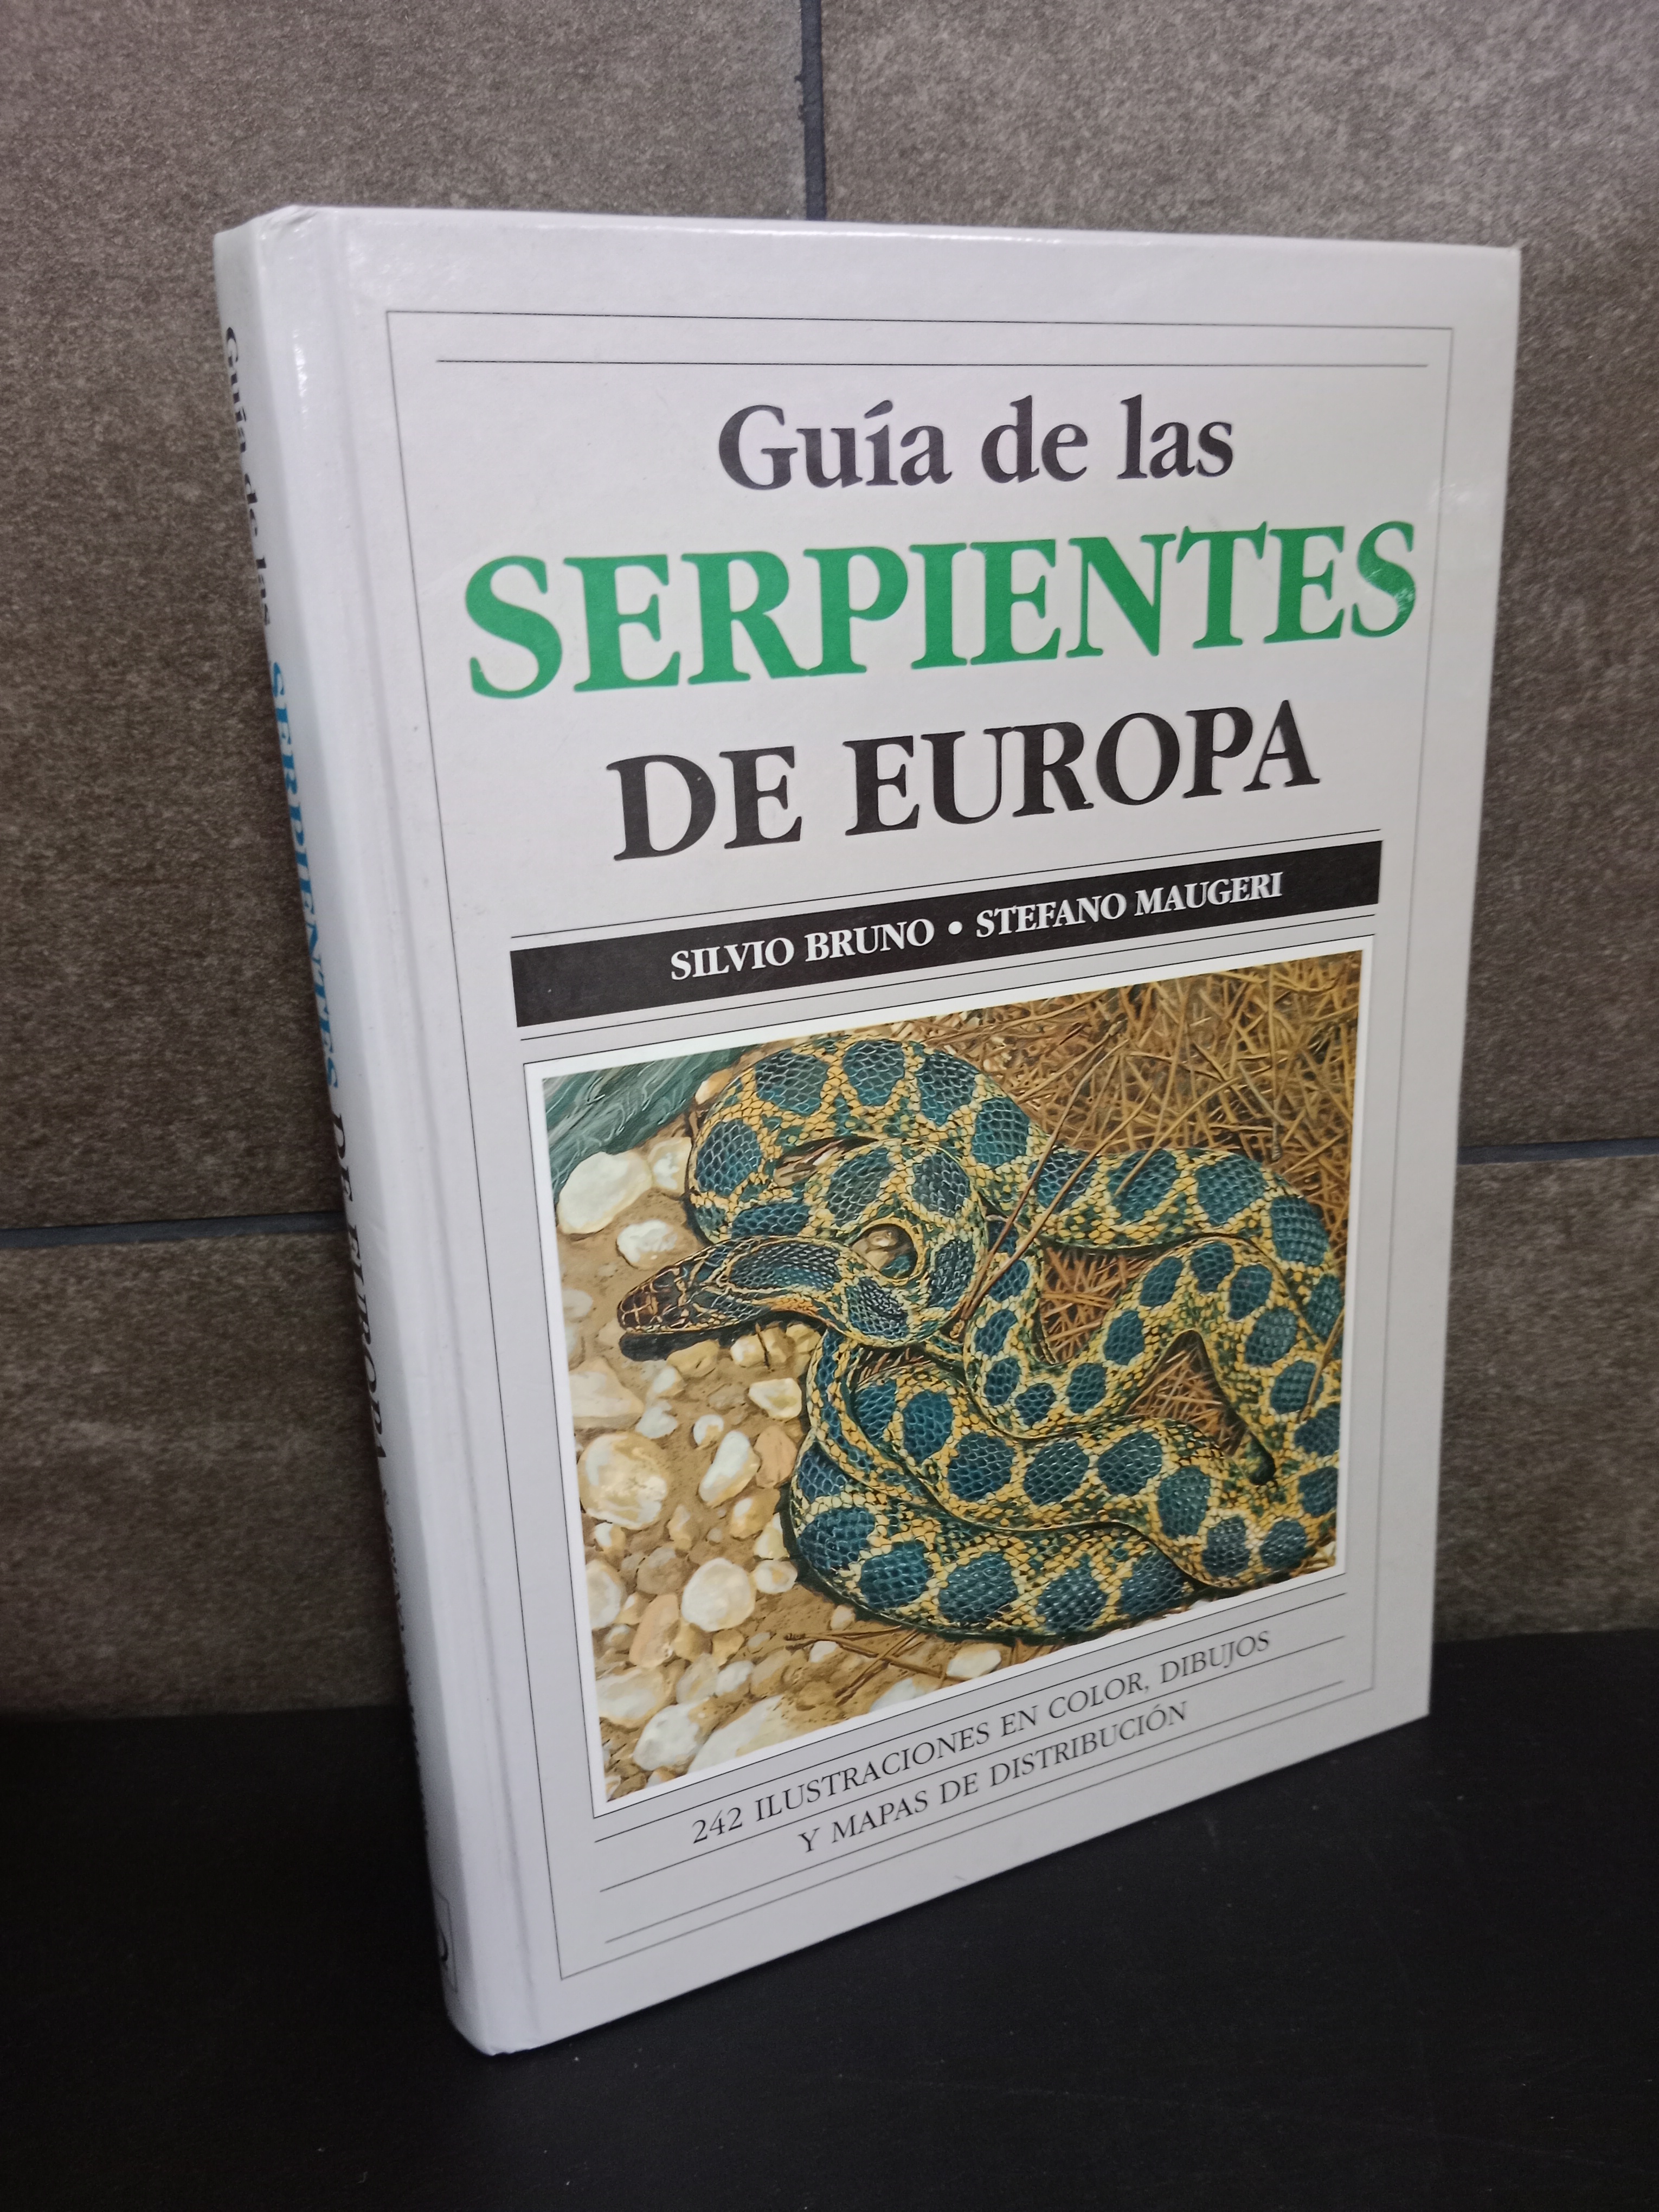 SILVIO BRUNO, STEFANO MAUGERI. GUIA DE LAS SERPIENTES DE EUROPA (GUIAS DEL NATURALISTA-REPTILES -ANFIBIOS-TERRARIOS) (Spanish Edition) - BRUNO,SILVIO Y MAUGERI,STEFANO